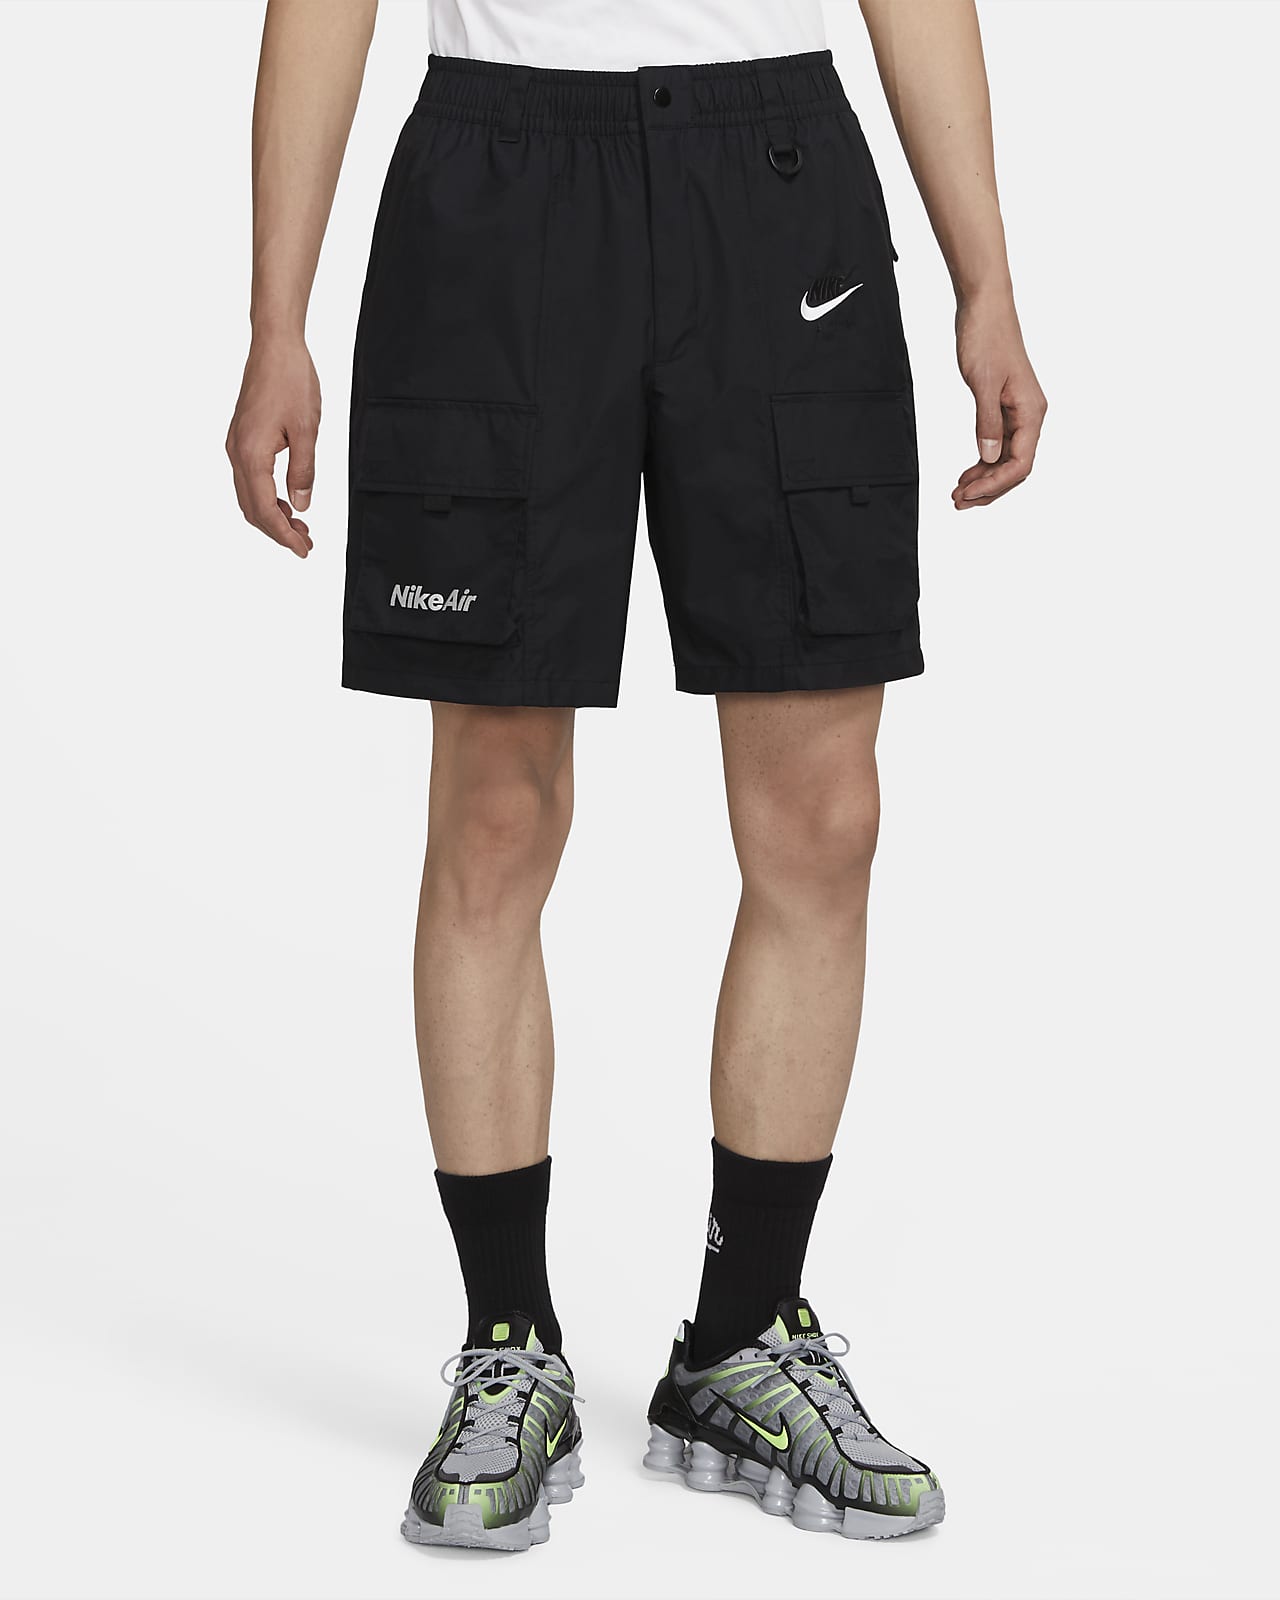 Nike Air Men's Shorts. Nike JP